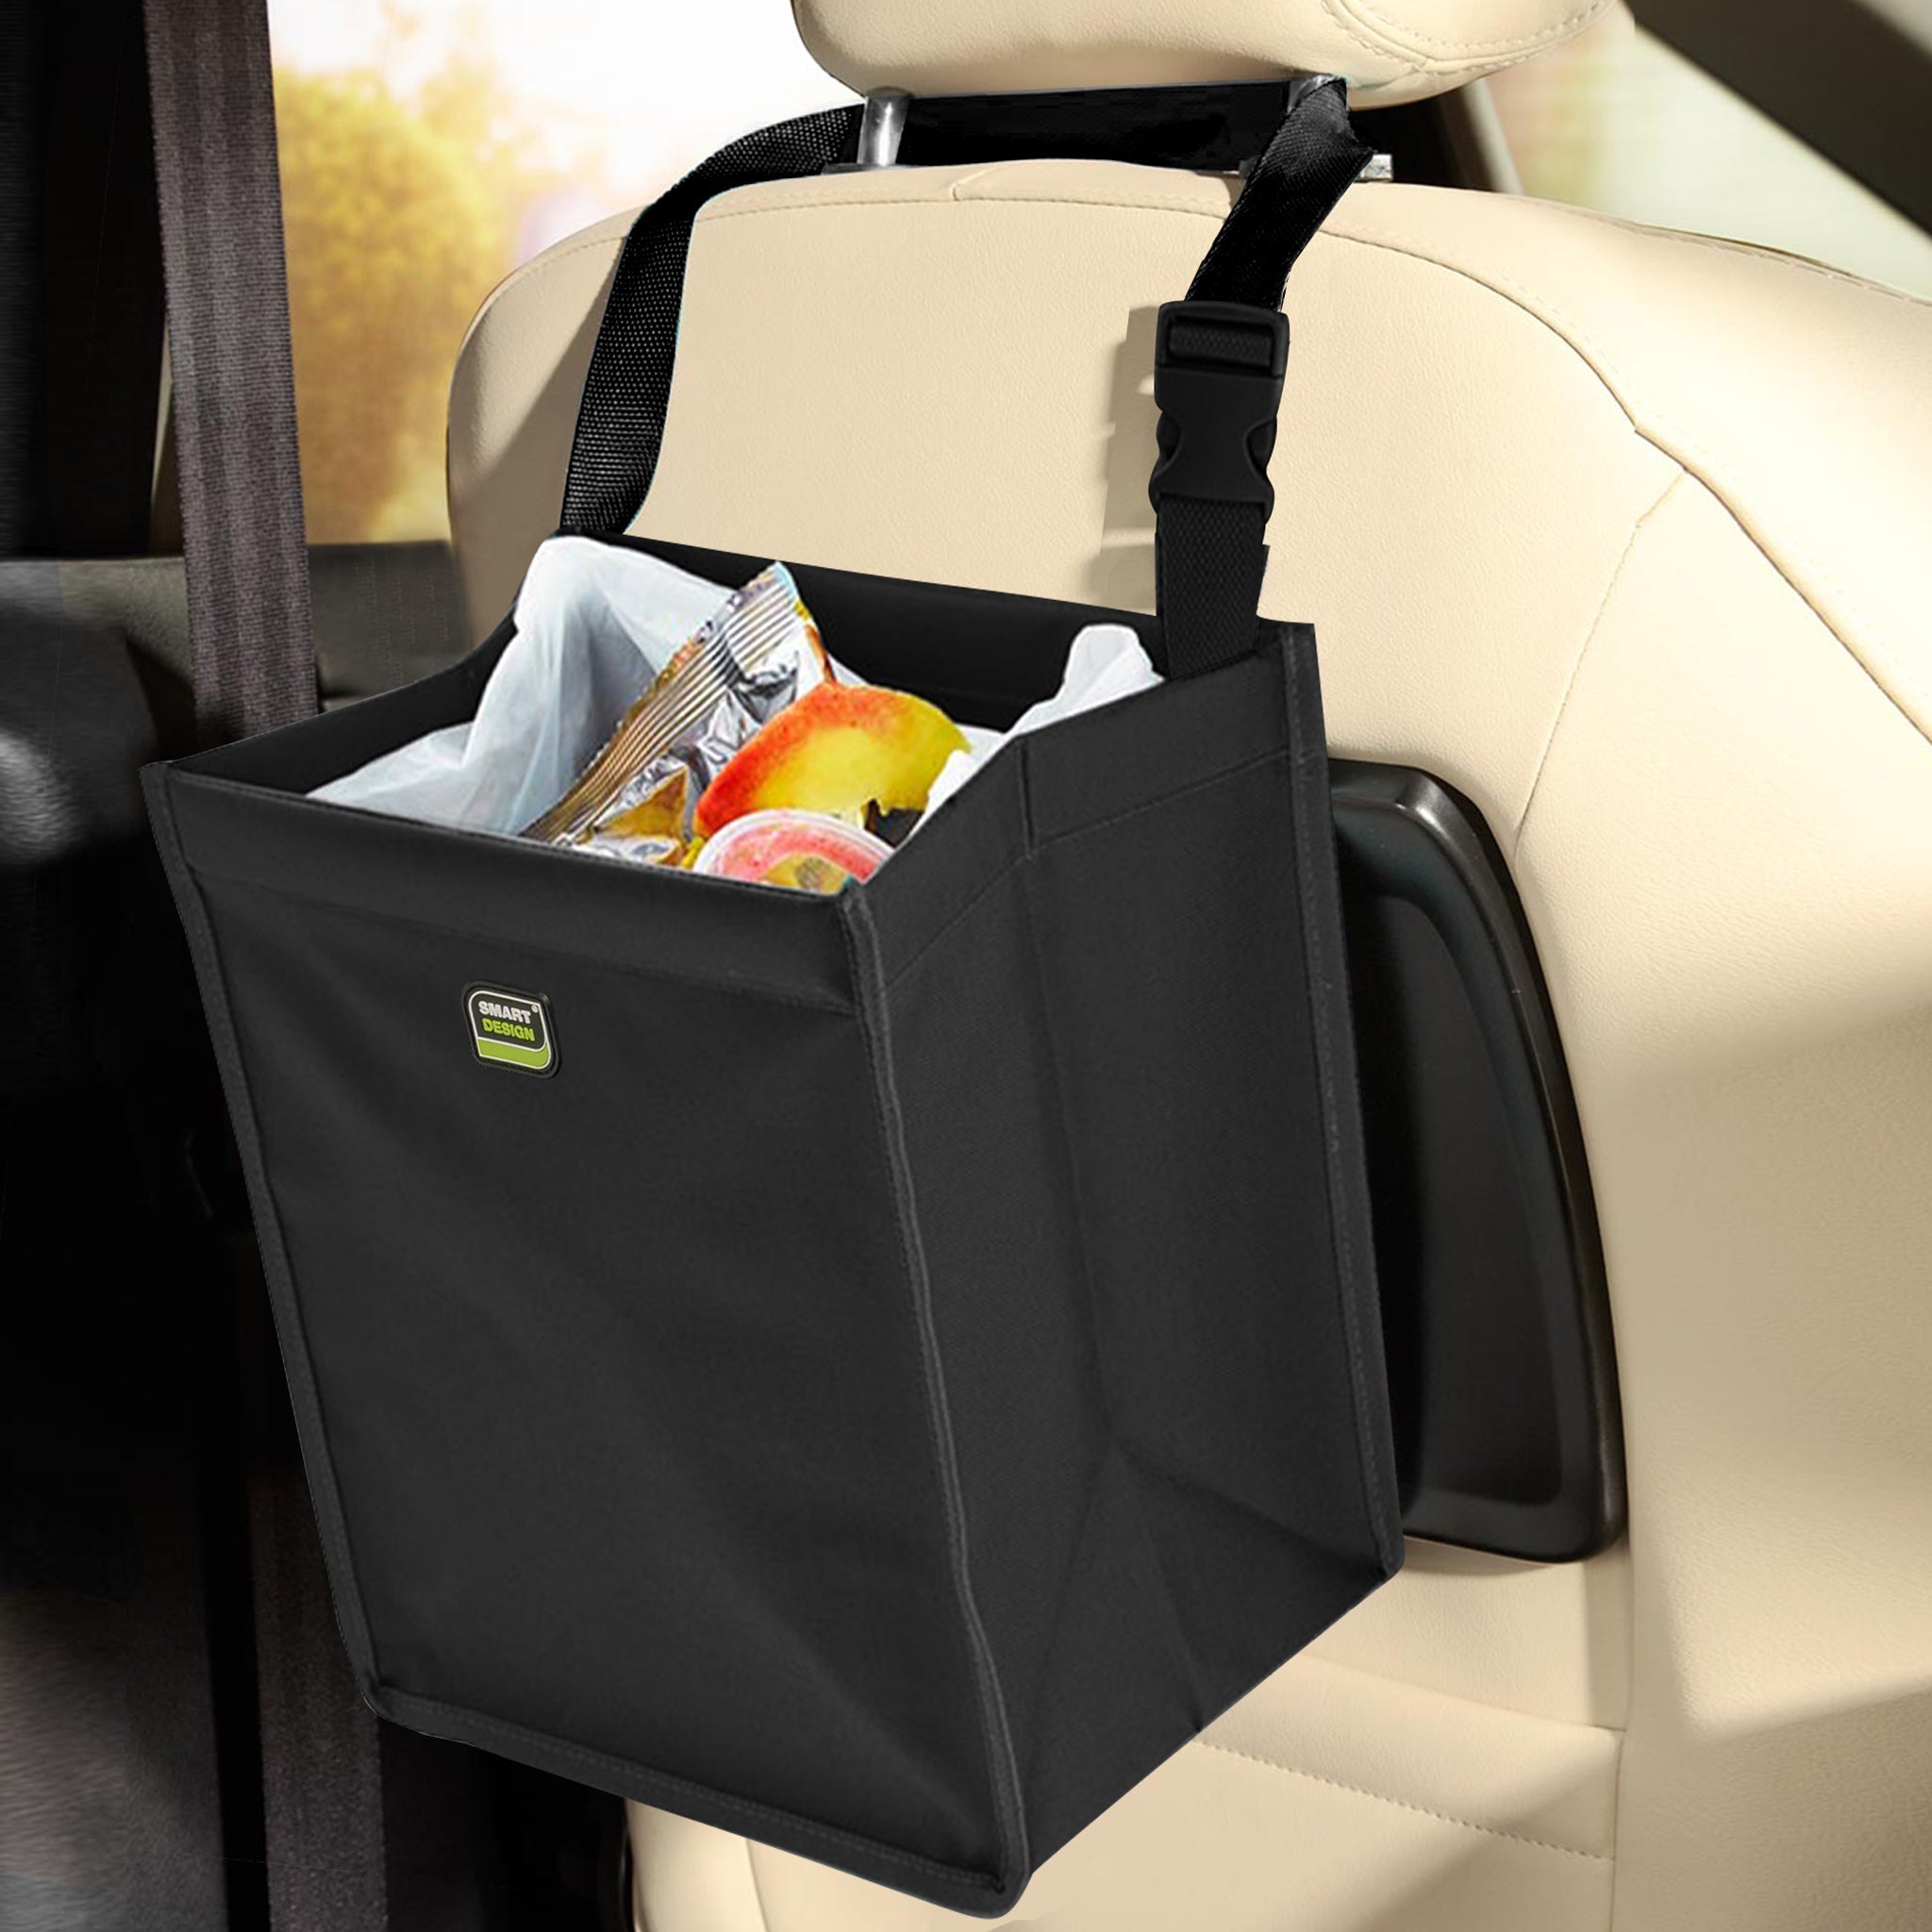 Vehicle Waste Bag with Adjustable Strap - Black - Smart Design® 3